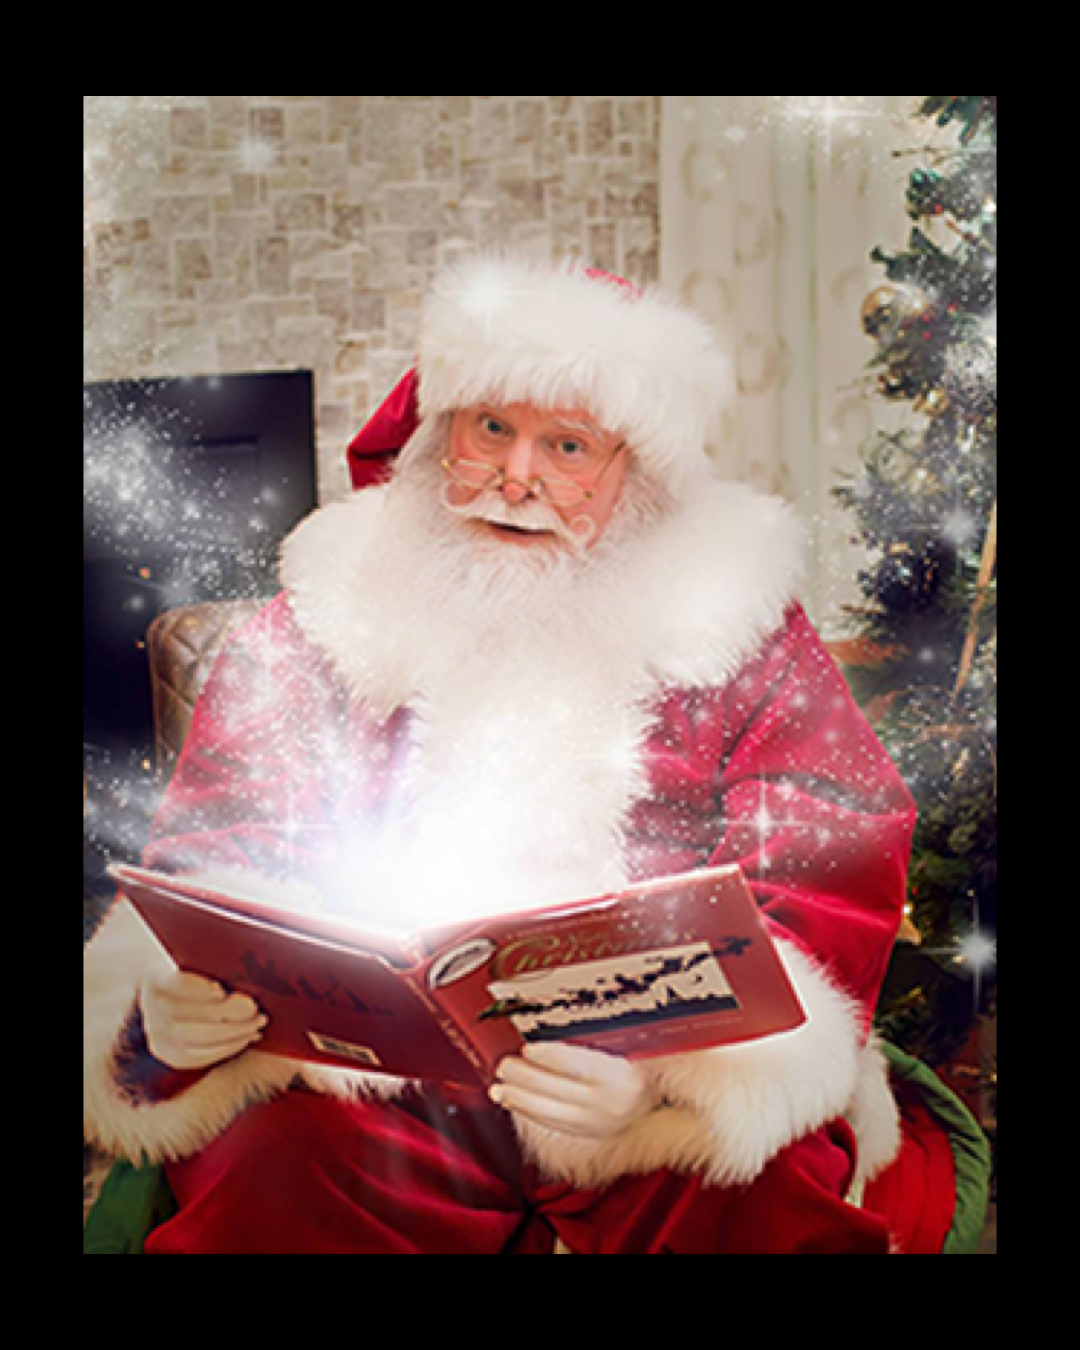 Virtual Santa Visits, Santa For Hire Unted States, Virtual Santa USA, Video Chat with Santa, Santa Phone Calls, Santa Videos, Talk to Santa, Santa Claus Virtual Visits, Chat With Santa, Santa Web Cam